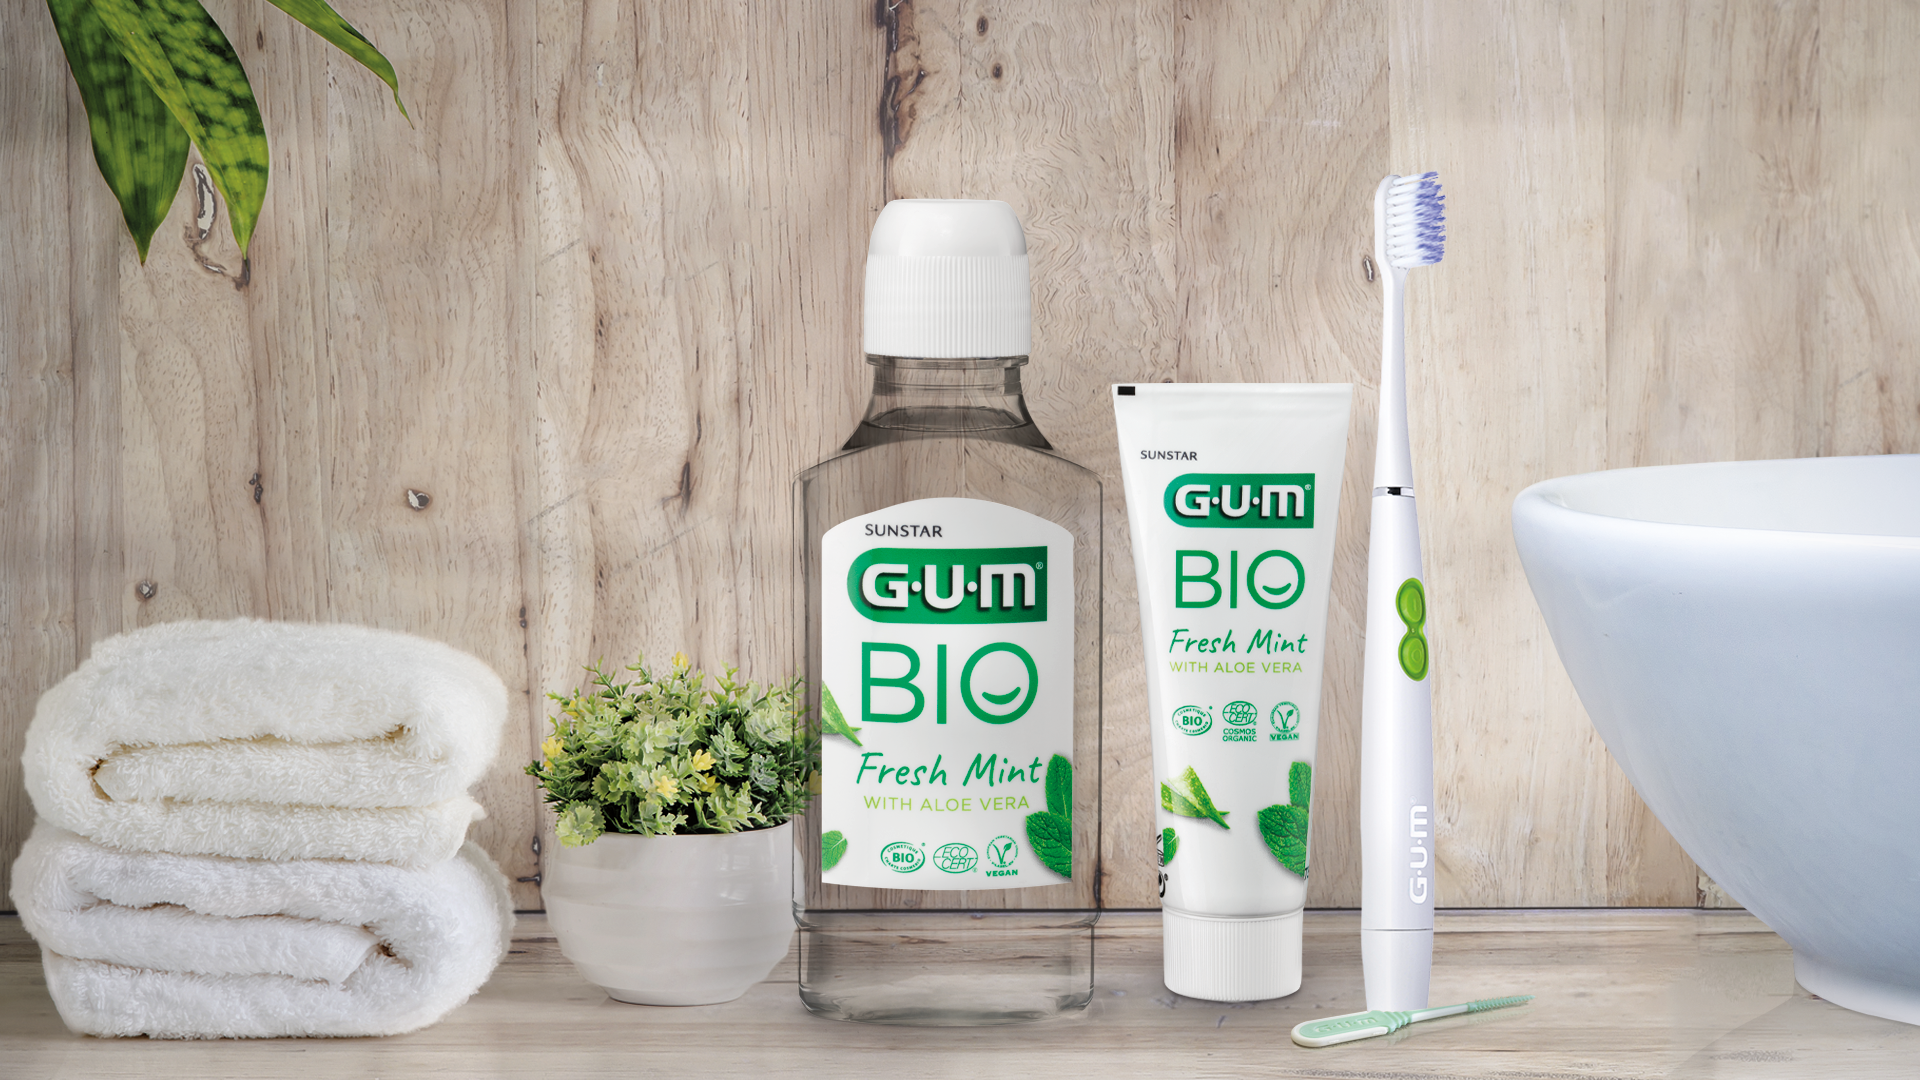 GUM BIO Mundspülung, GUM BIO Zahnpasta und SONIC Daily Zahnbürste ins Badezimmer für eine tägliche Pflege 